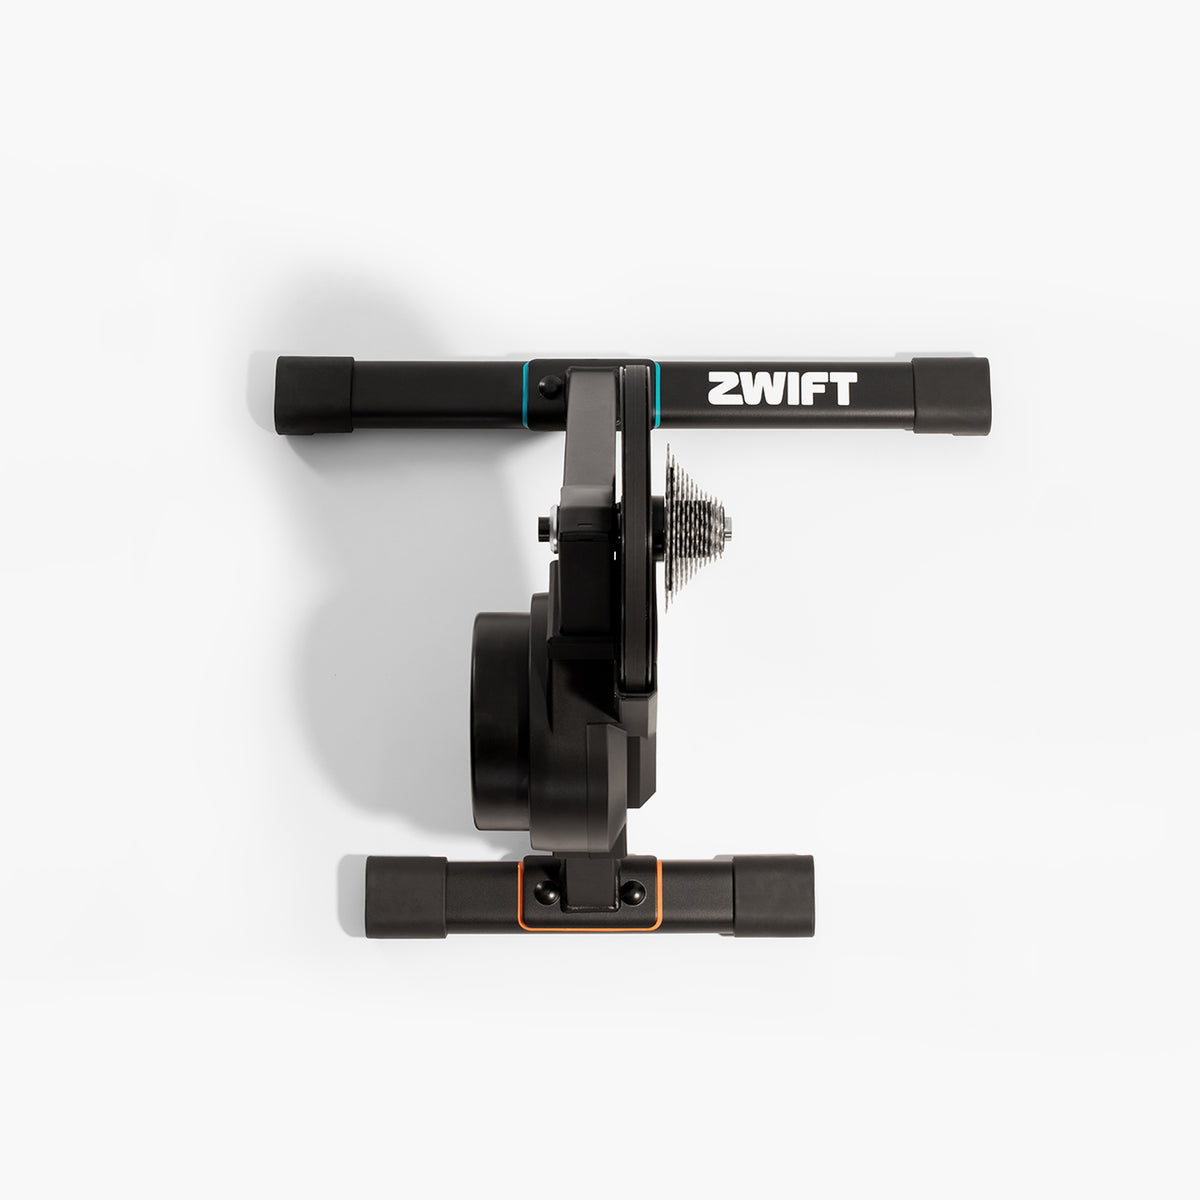 Rodillo inteligente Zwift Hub con cassette de 12 velocidades